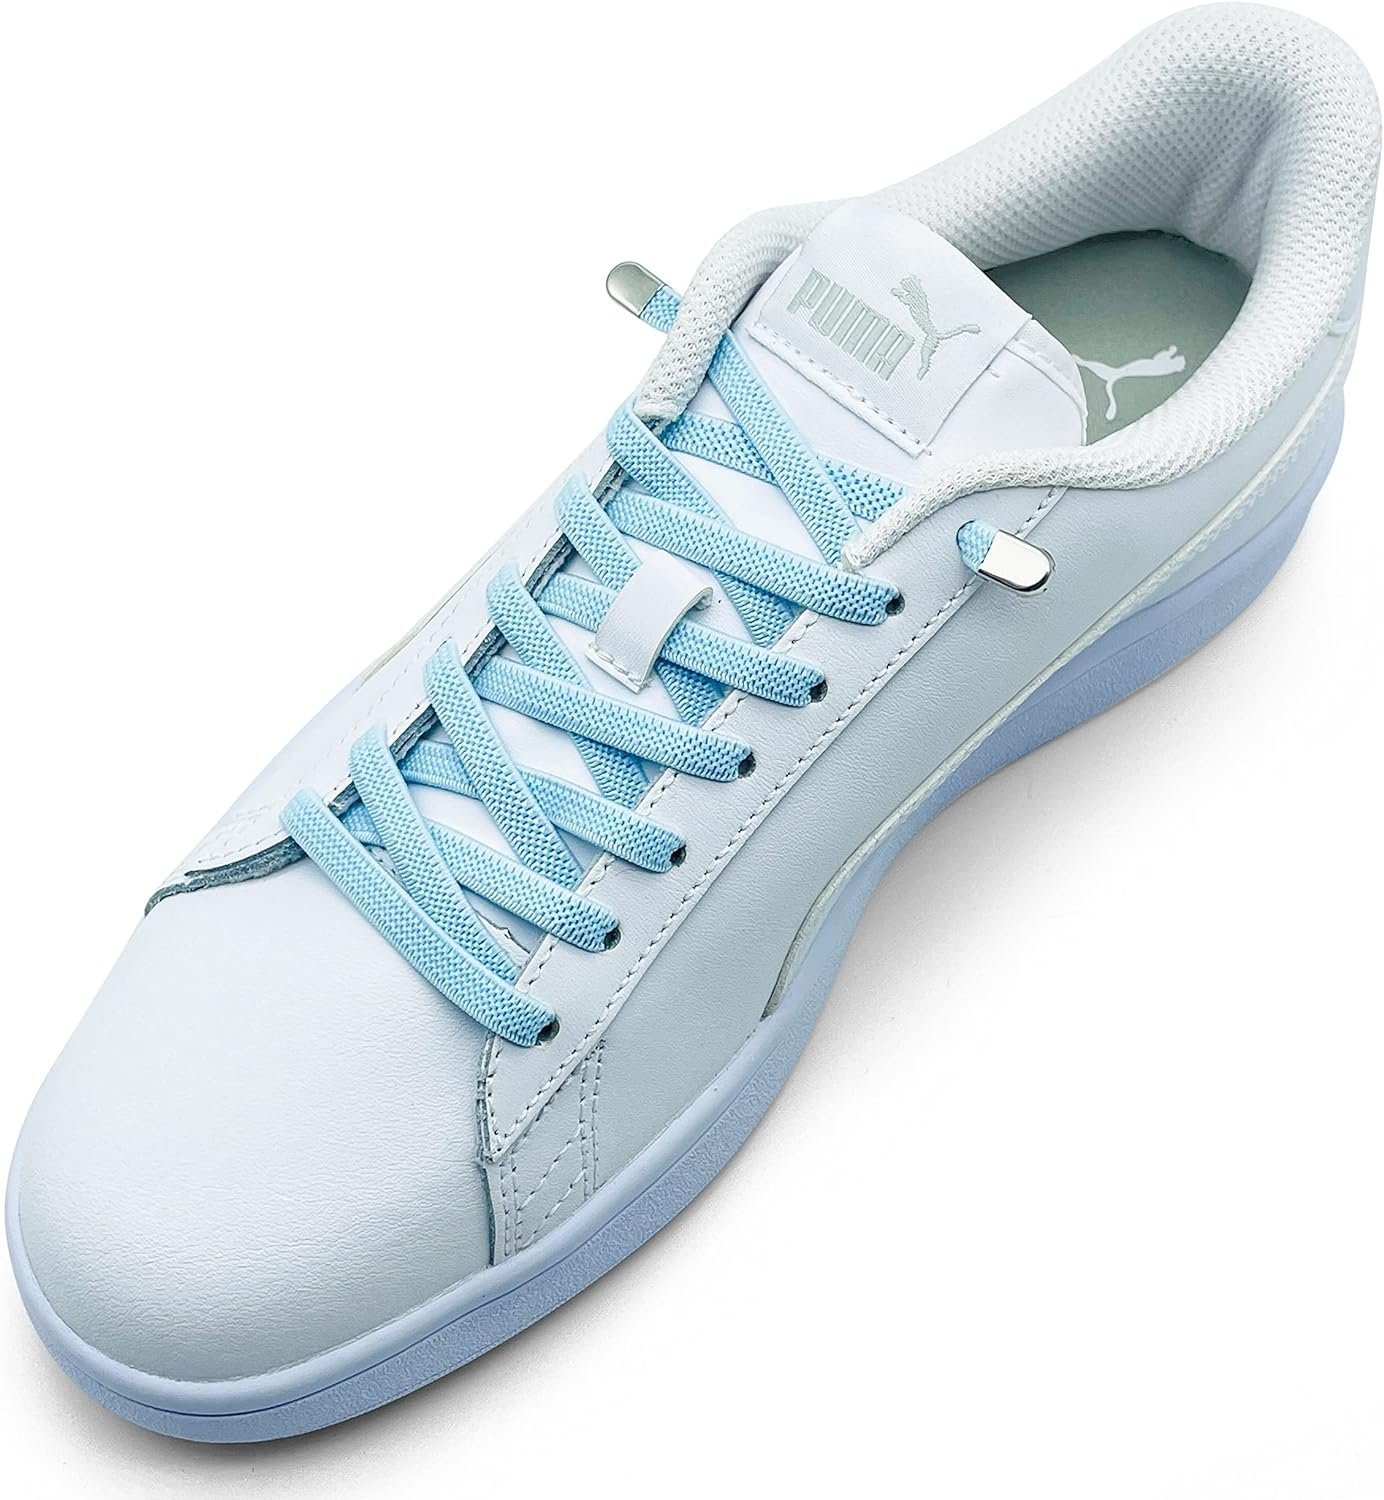 (Clips) Enden 4 8 inkl. Schnürsenkel Clips, Stück ELANOX 2 mit in St. elastische - silber für Paar Schuhe hellblau Schnürsenkel